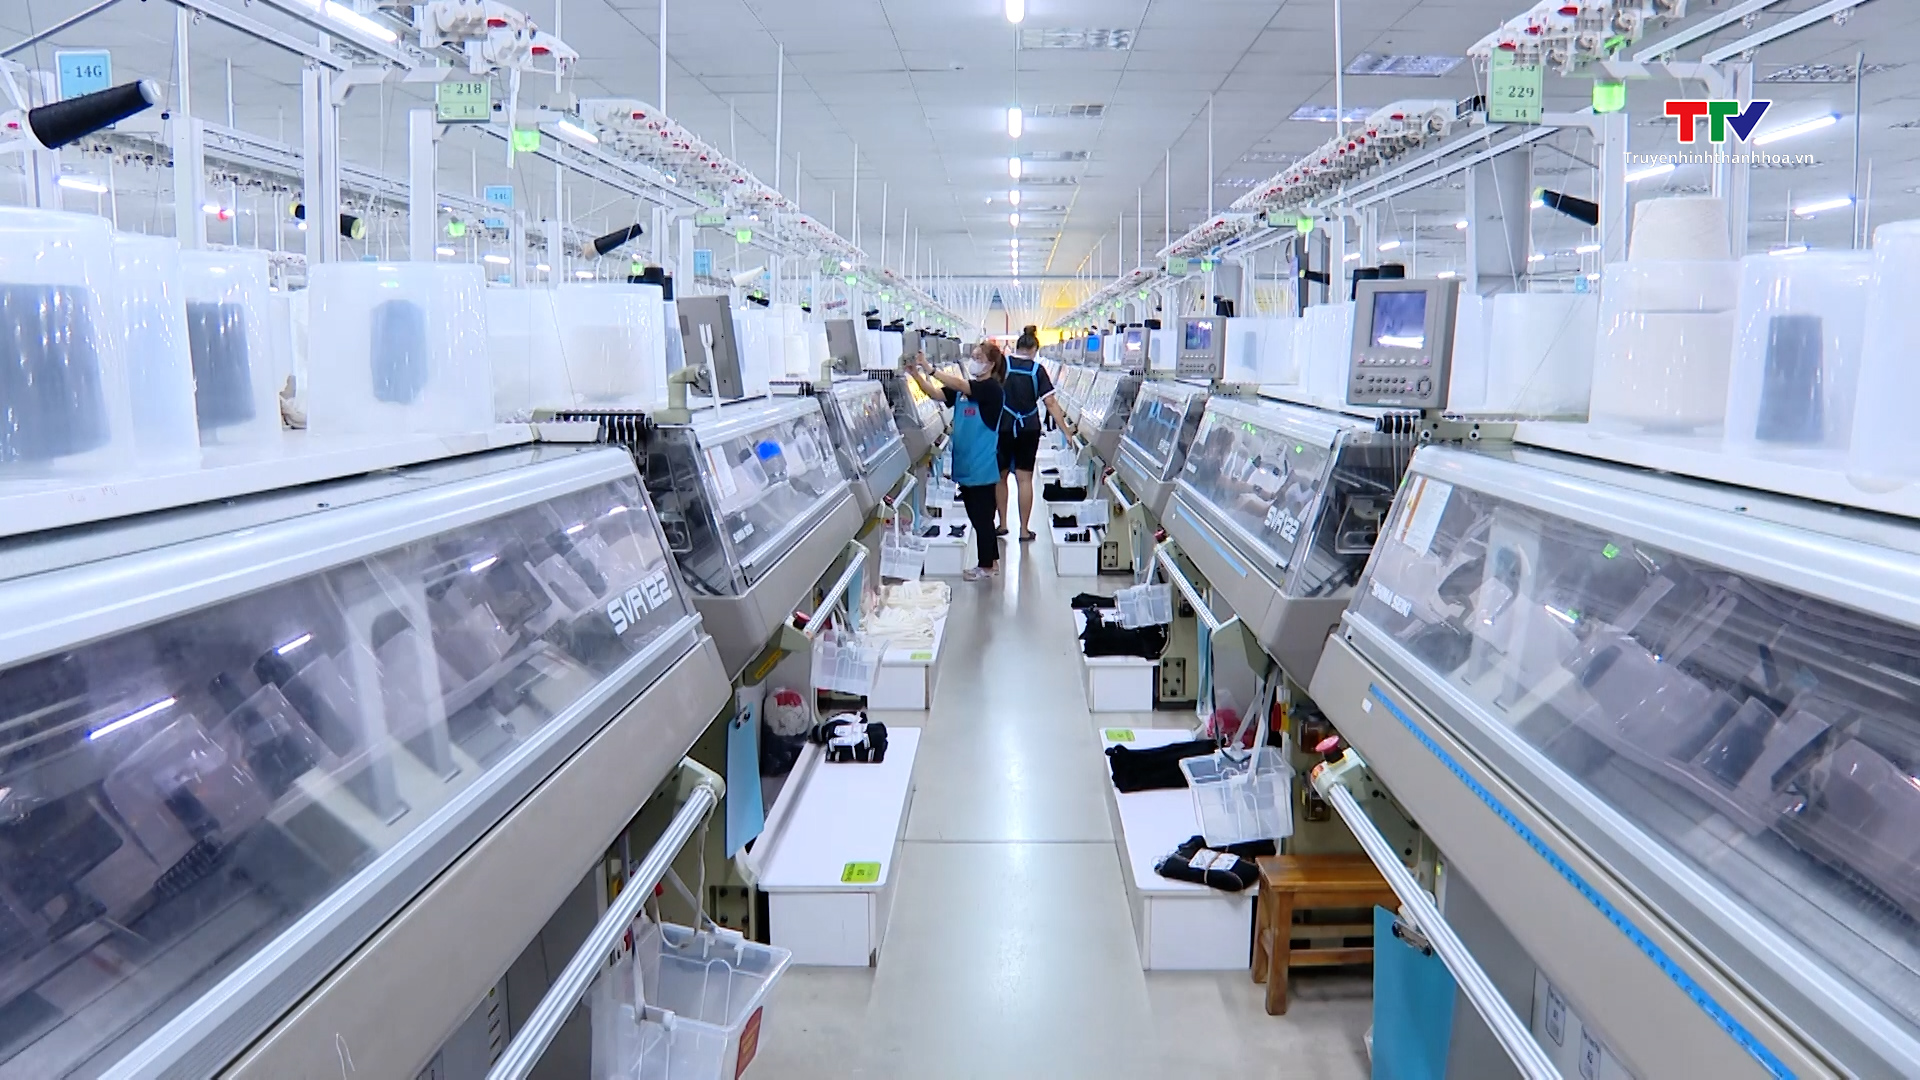 Sản xuất công nghiệp Thanh Hóa giữ vững đà tăng trưởng- Ảnh 7.